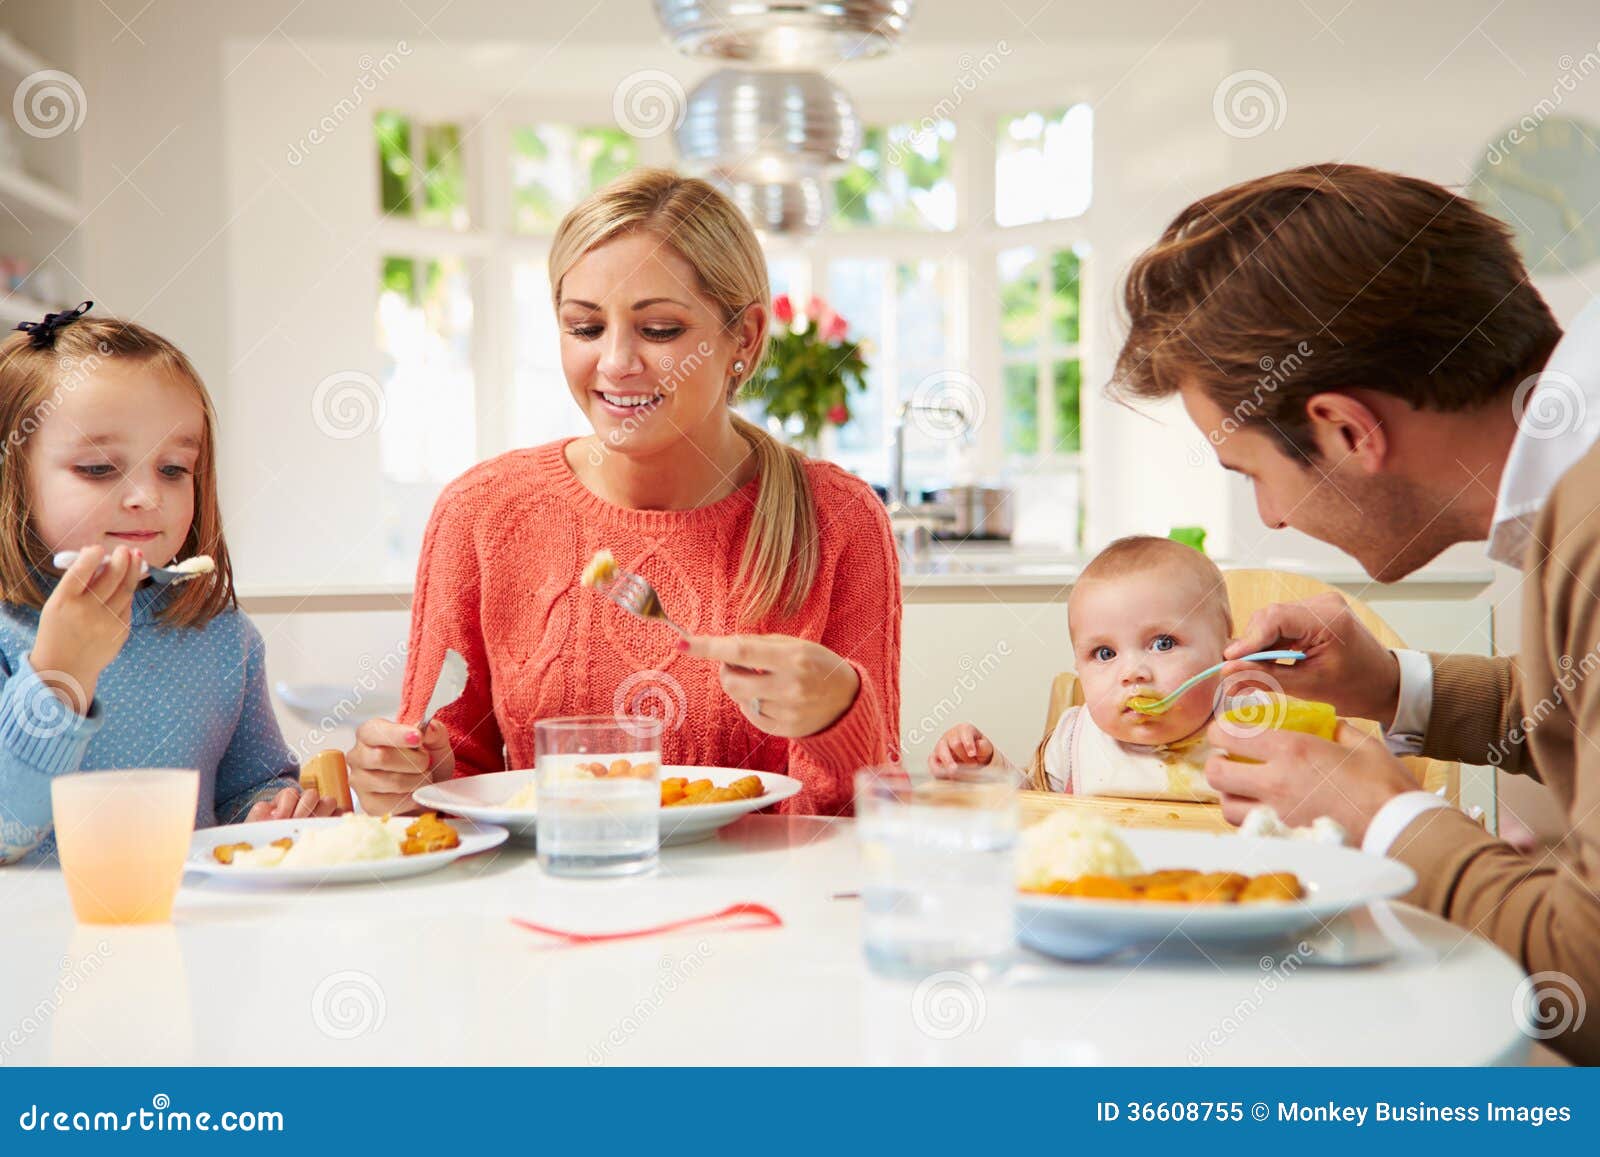 Familie Met Jonge Baby Die Maaltijd Thuis Eten Stock Afbeelding - Image of eten: 36608755